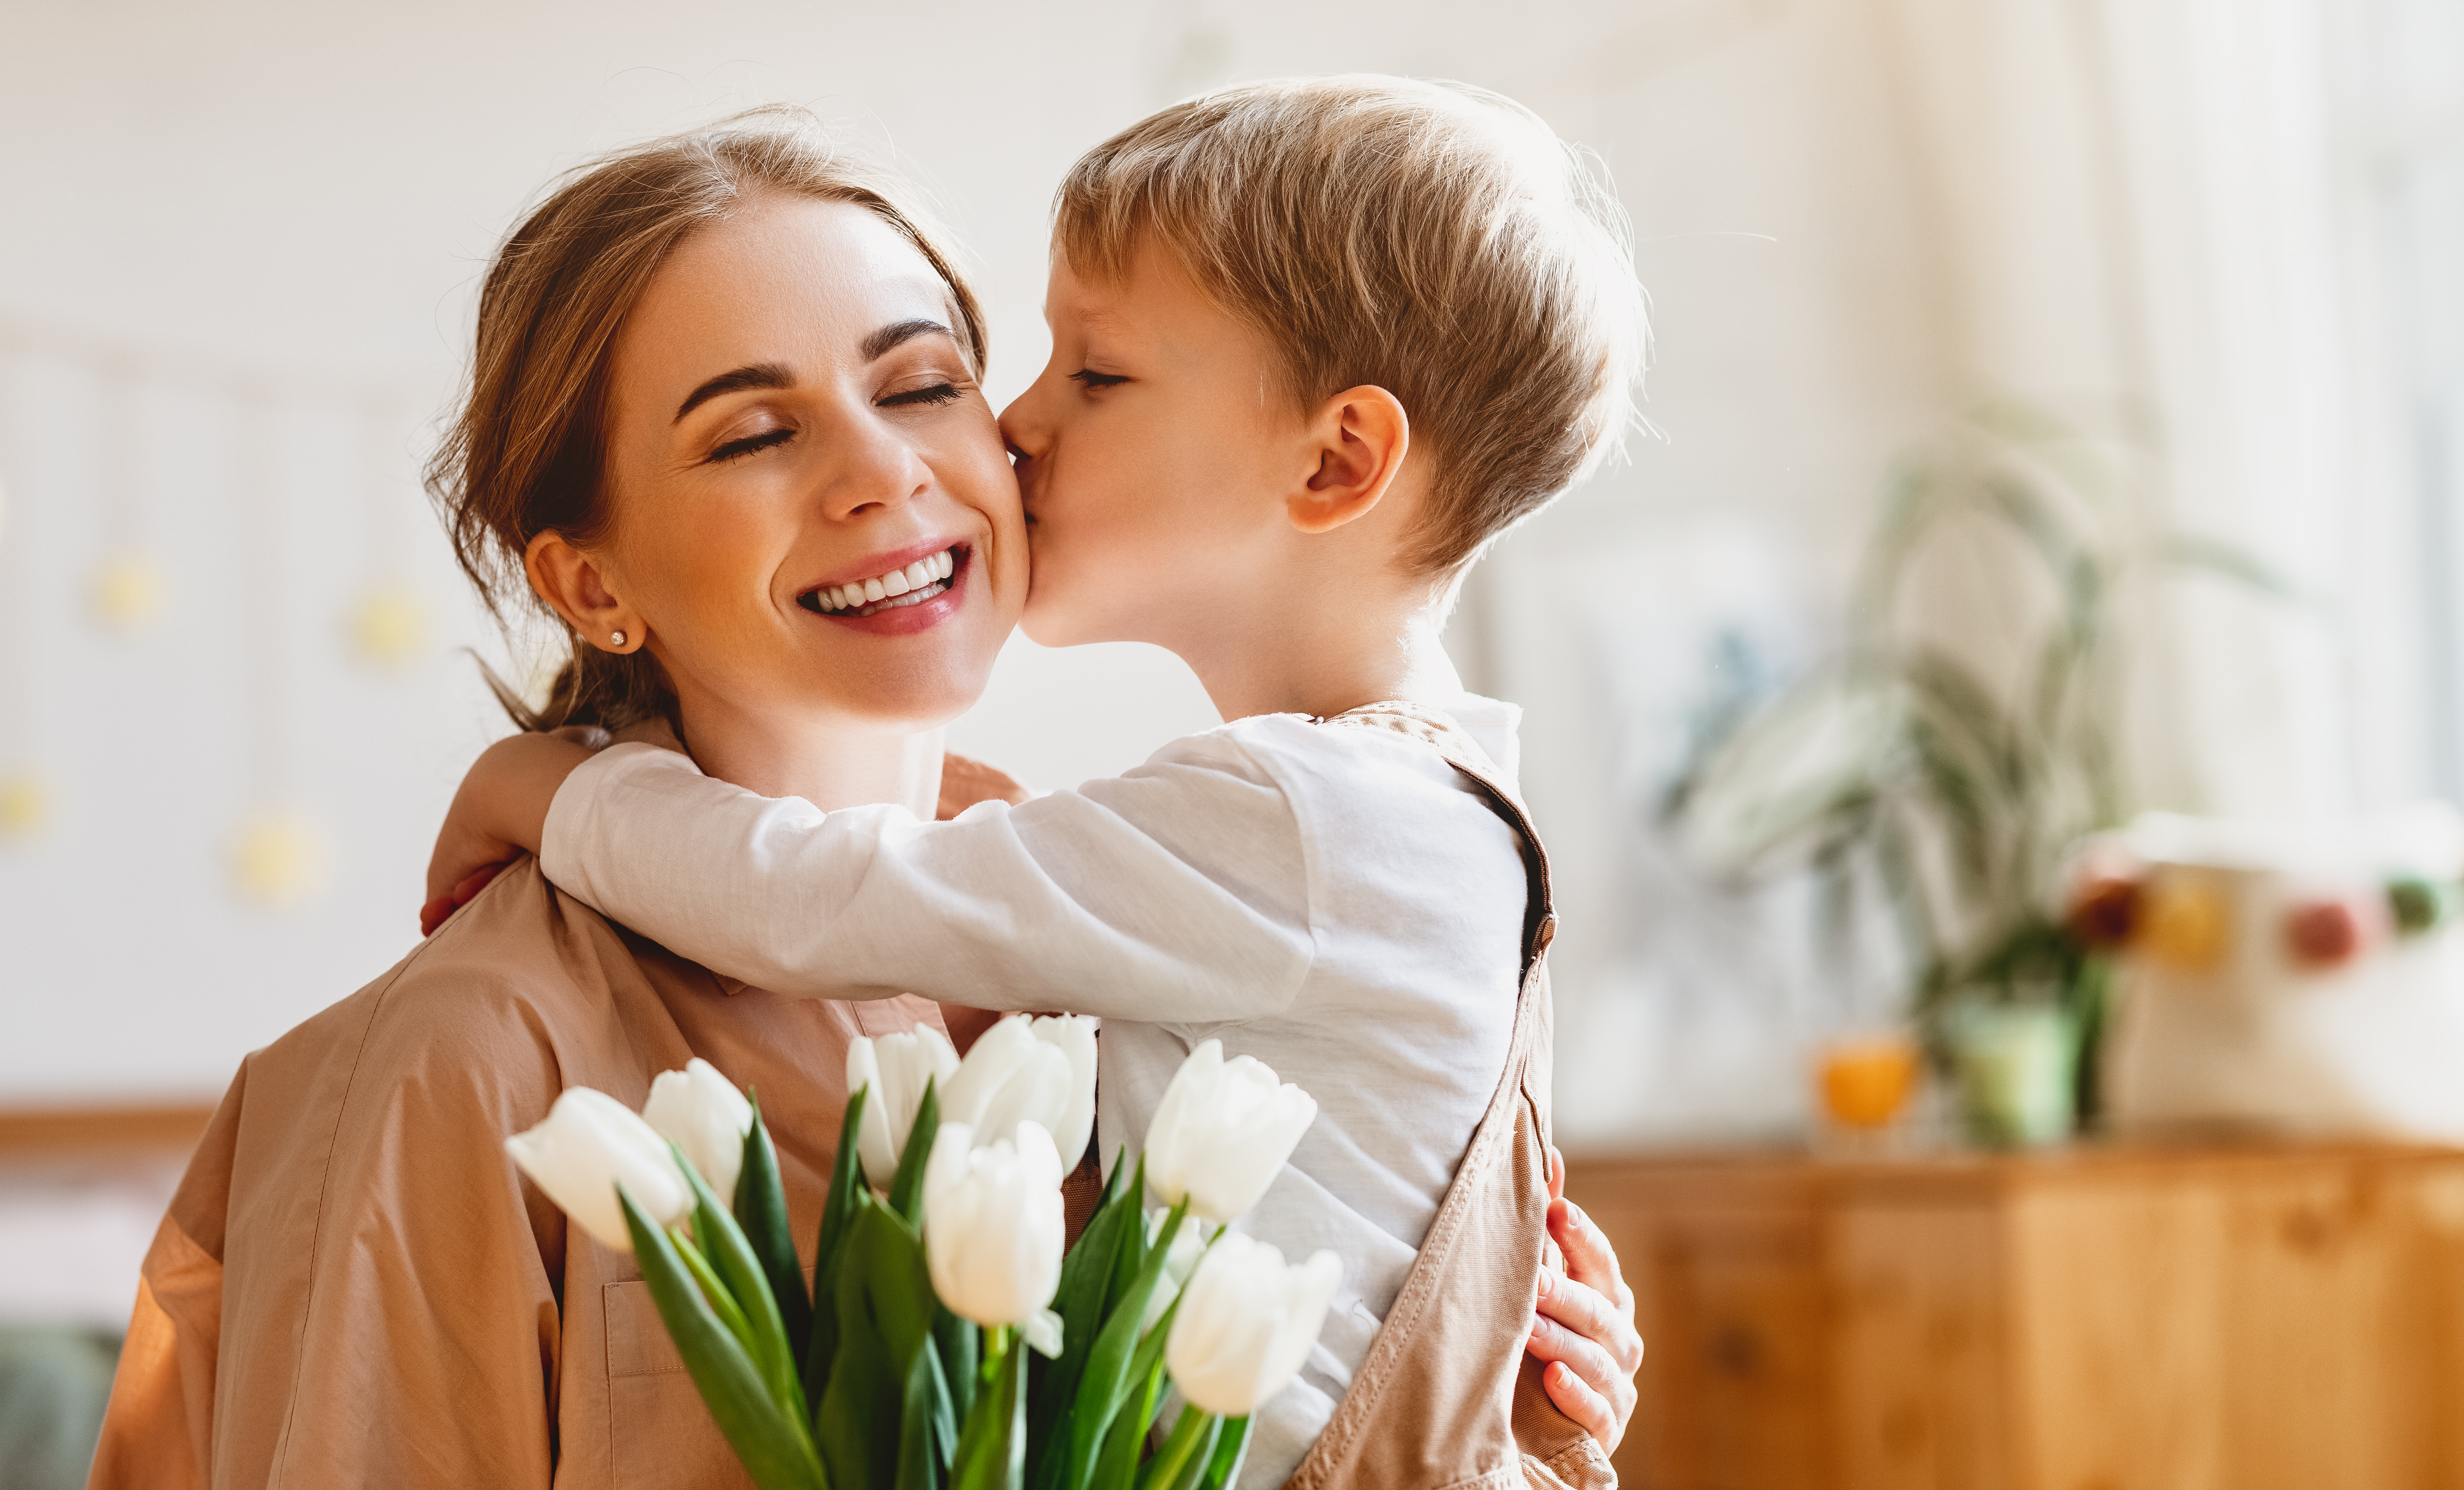 Kleiner Junge küsst seine Mutter und schenkt ihr Blumen | Quelle: Shutterstock